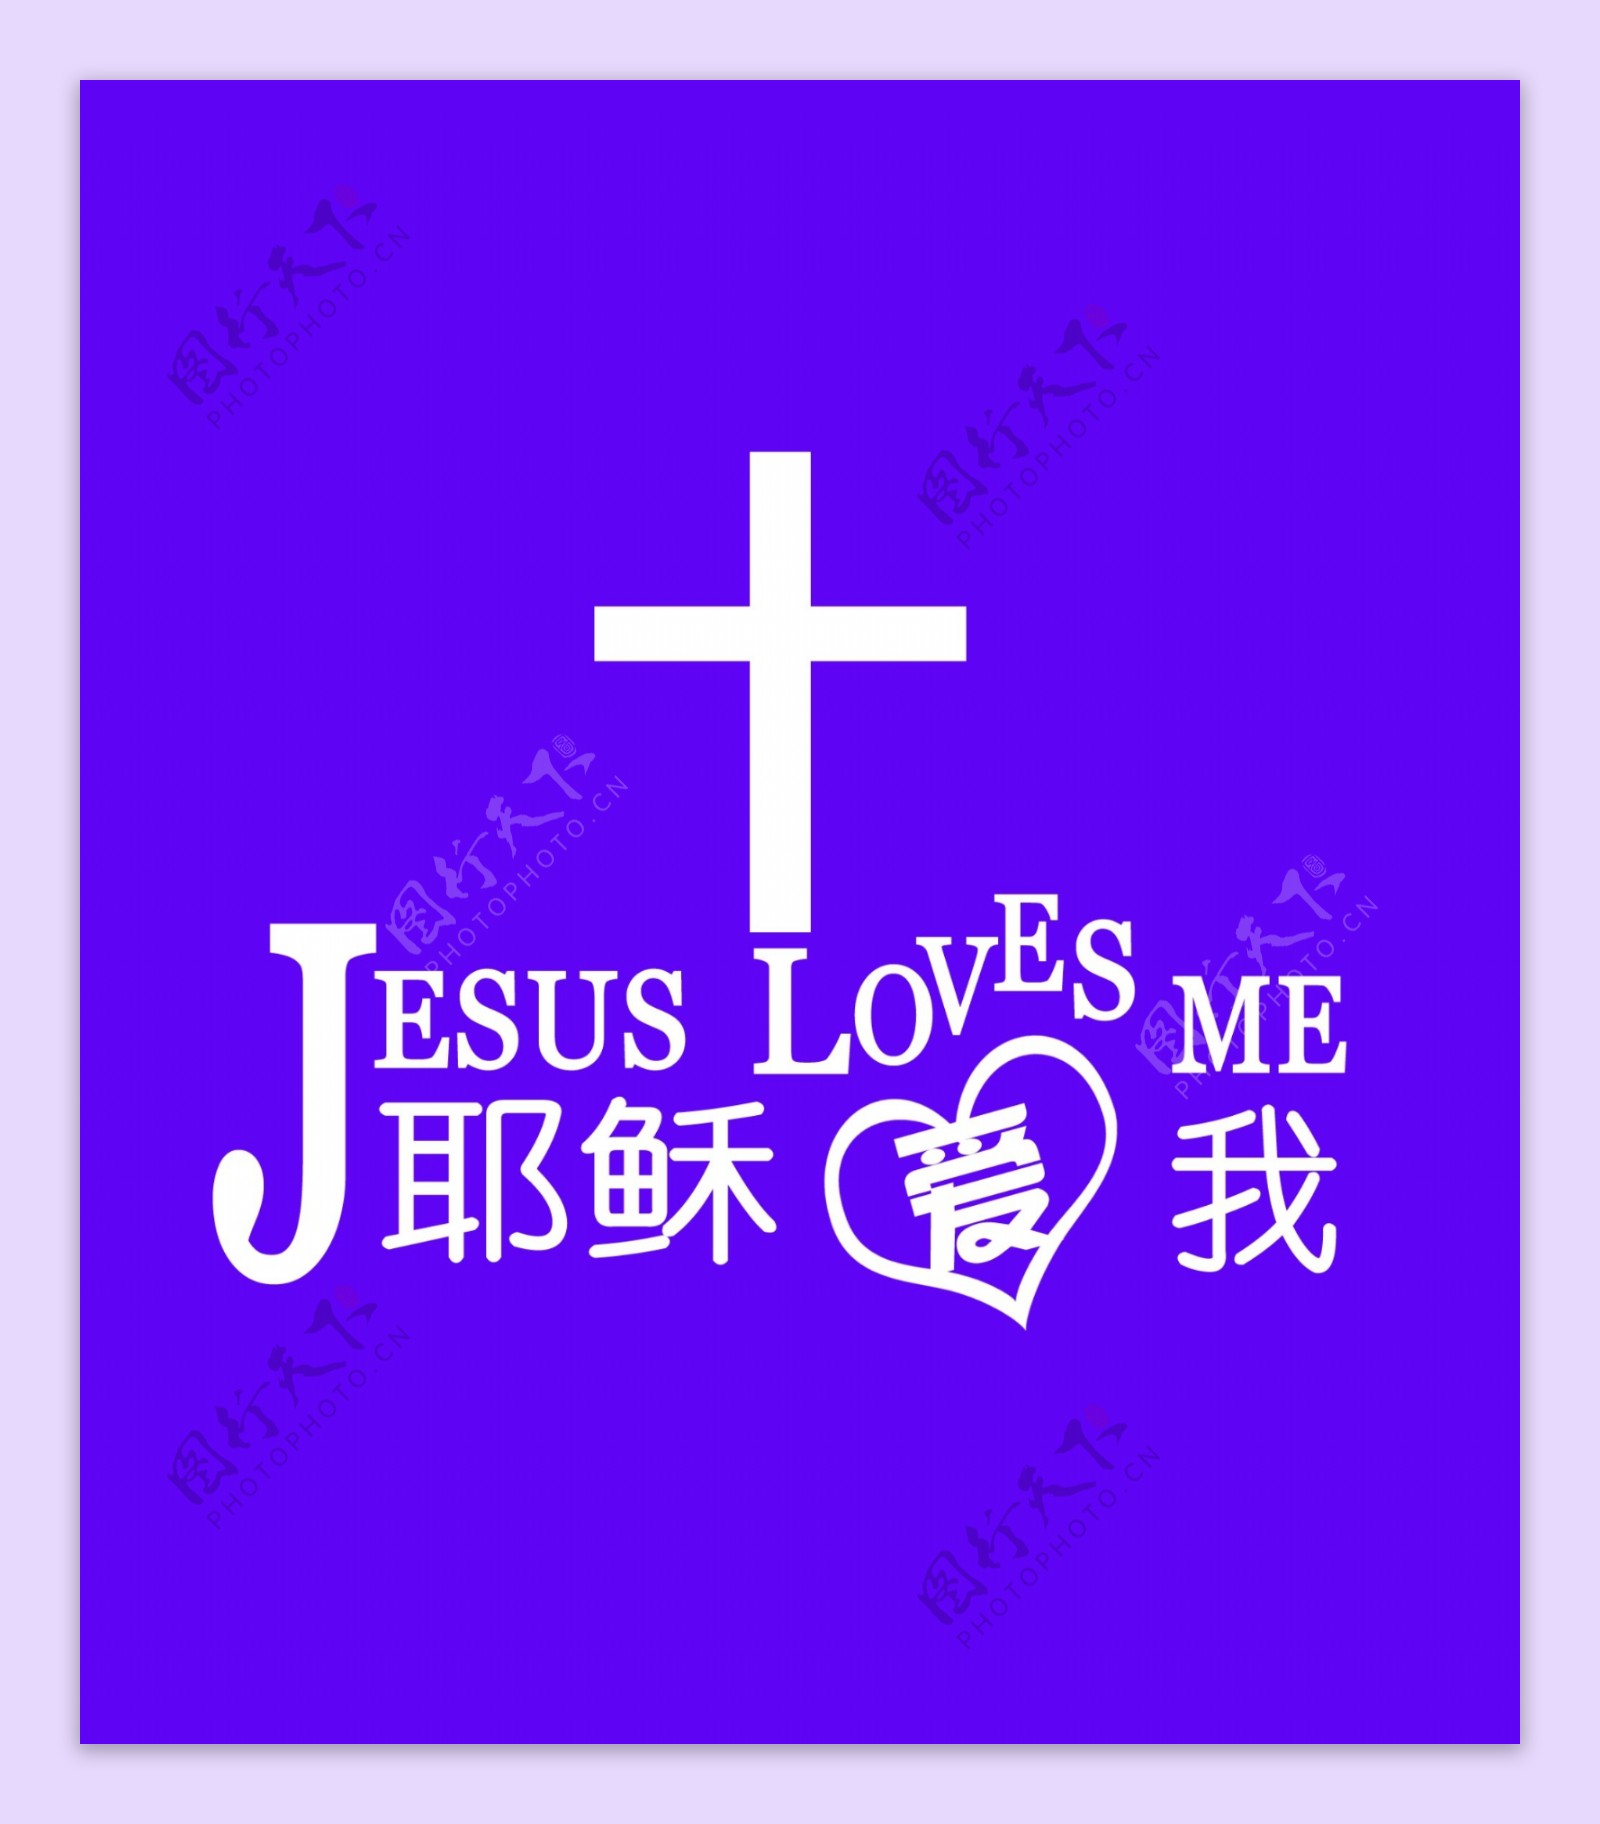 耶稣爱你图片大全-基督教图片站主内图片大全 基督徒 壁纸 教会 标志 QQ表情 素材